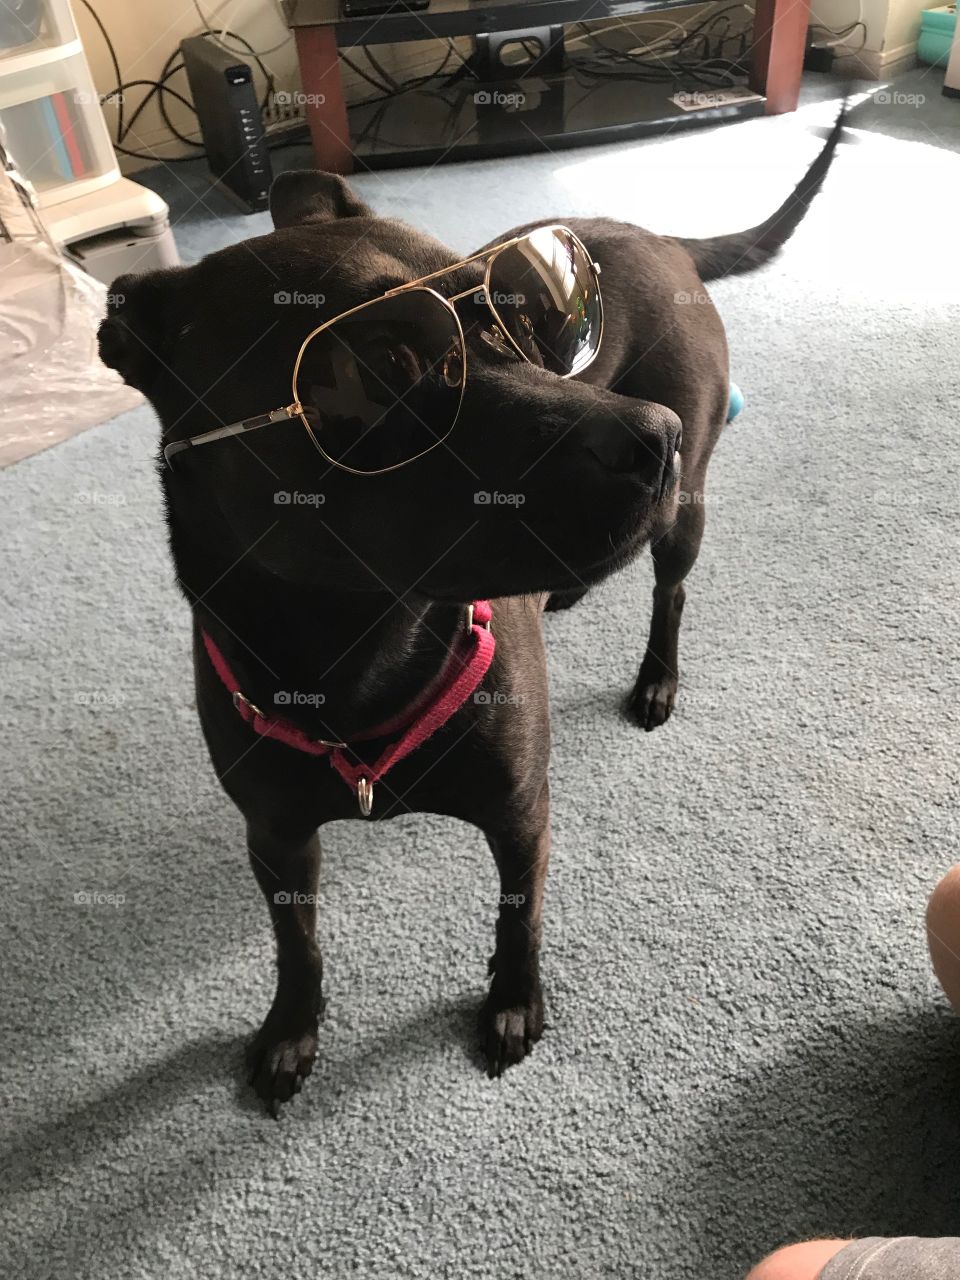 Hip dog Rockin some shades!